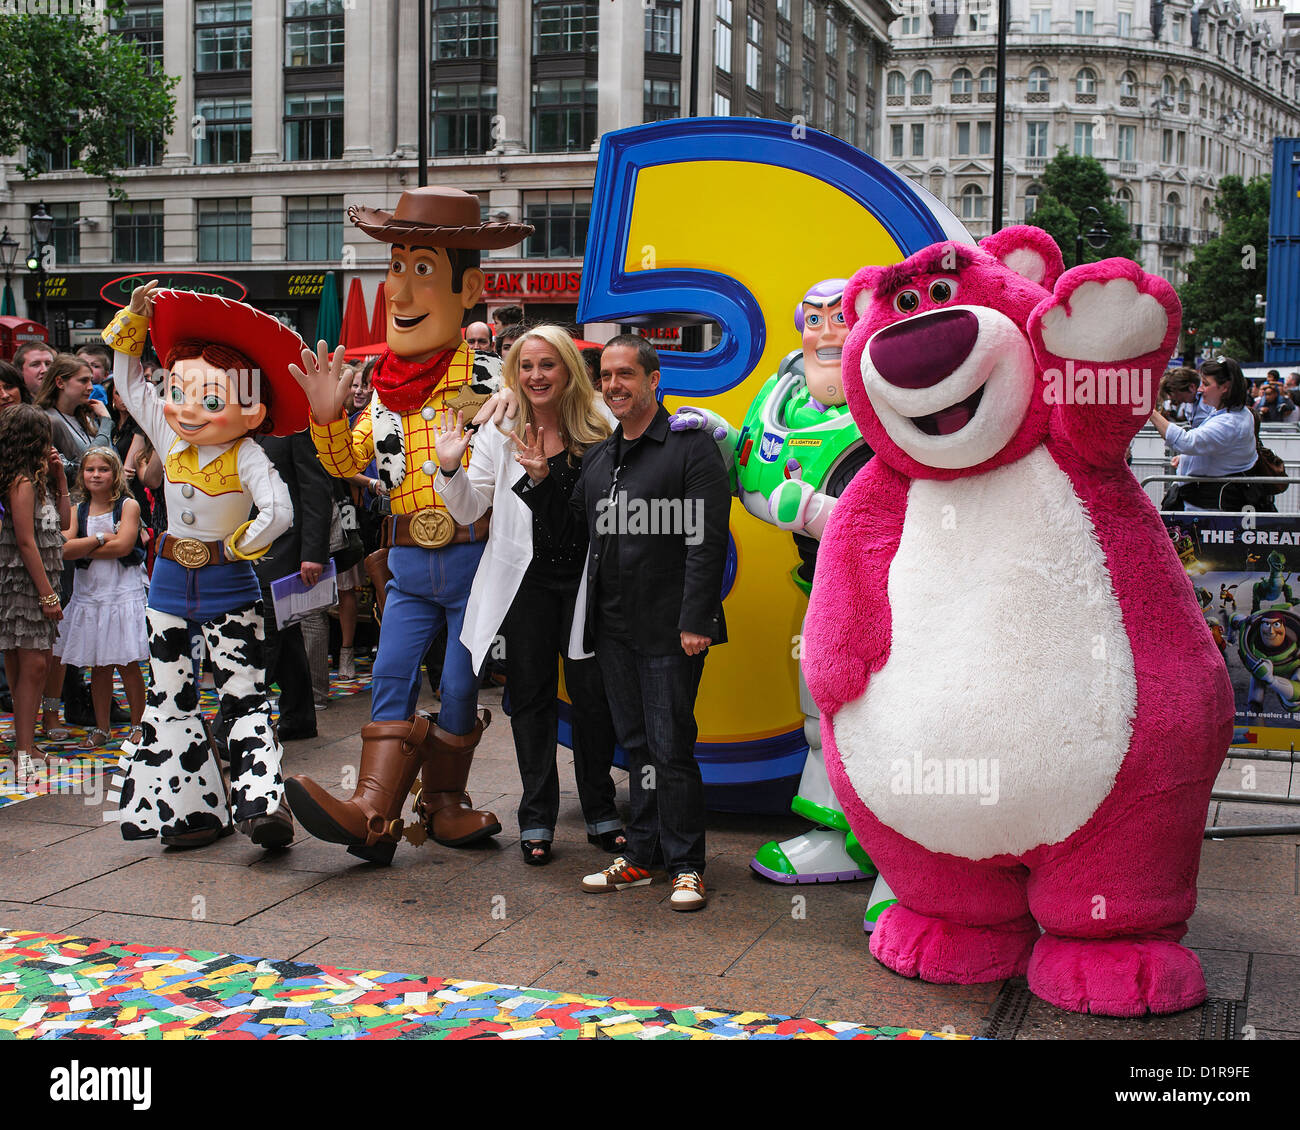 Uk Premiere di Toy Story 3 all'Empire Leicester Square, Londra, 18 luglio 2010. Foto di Julie Edwards. Foto Stock